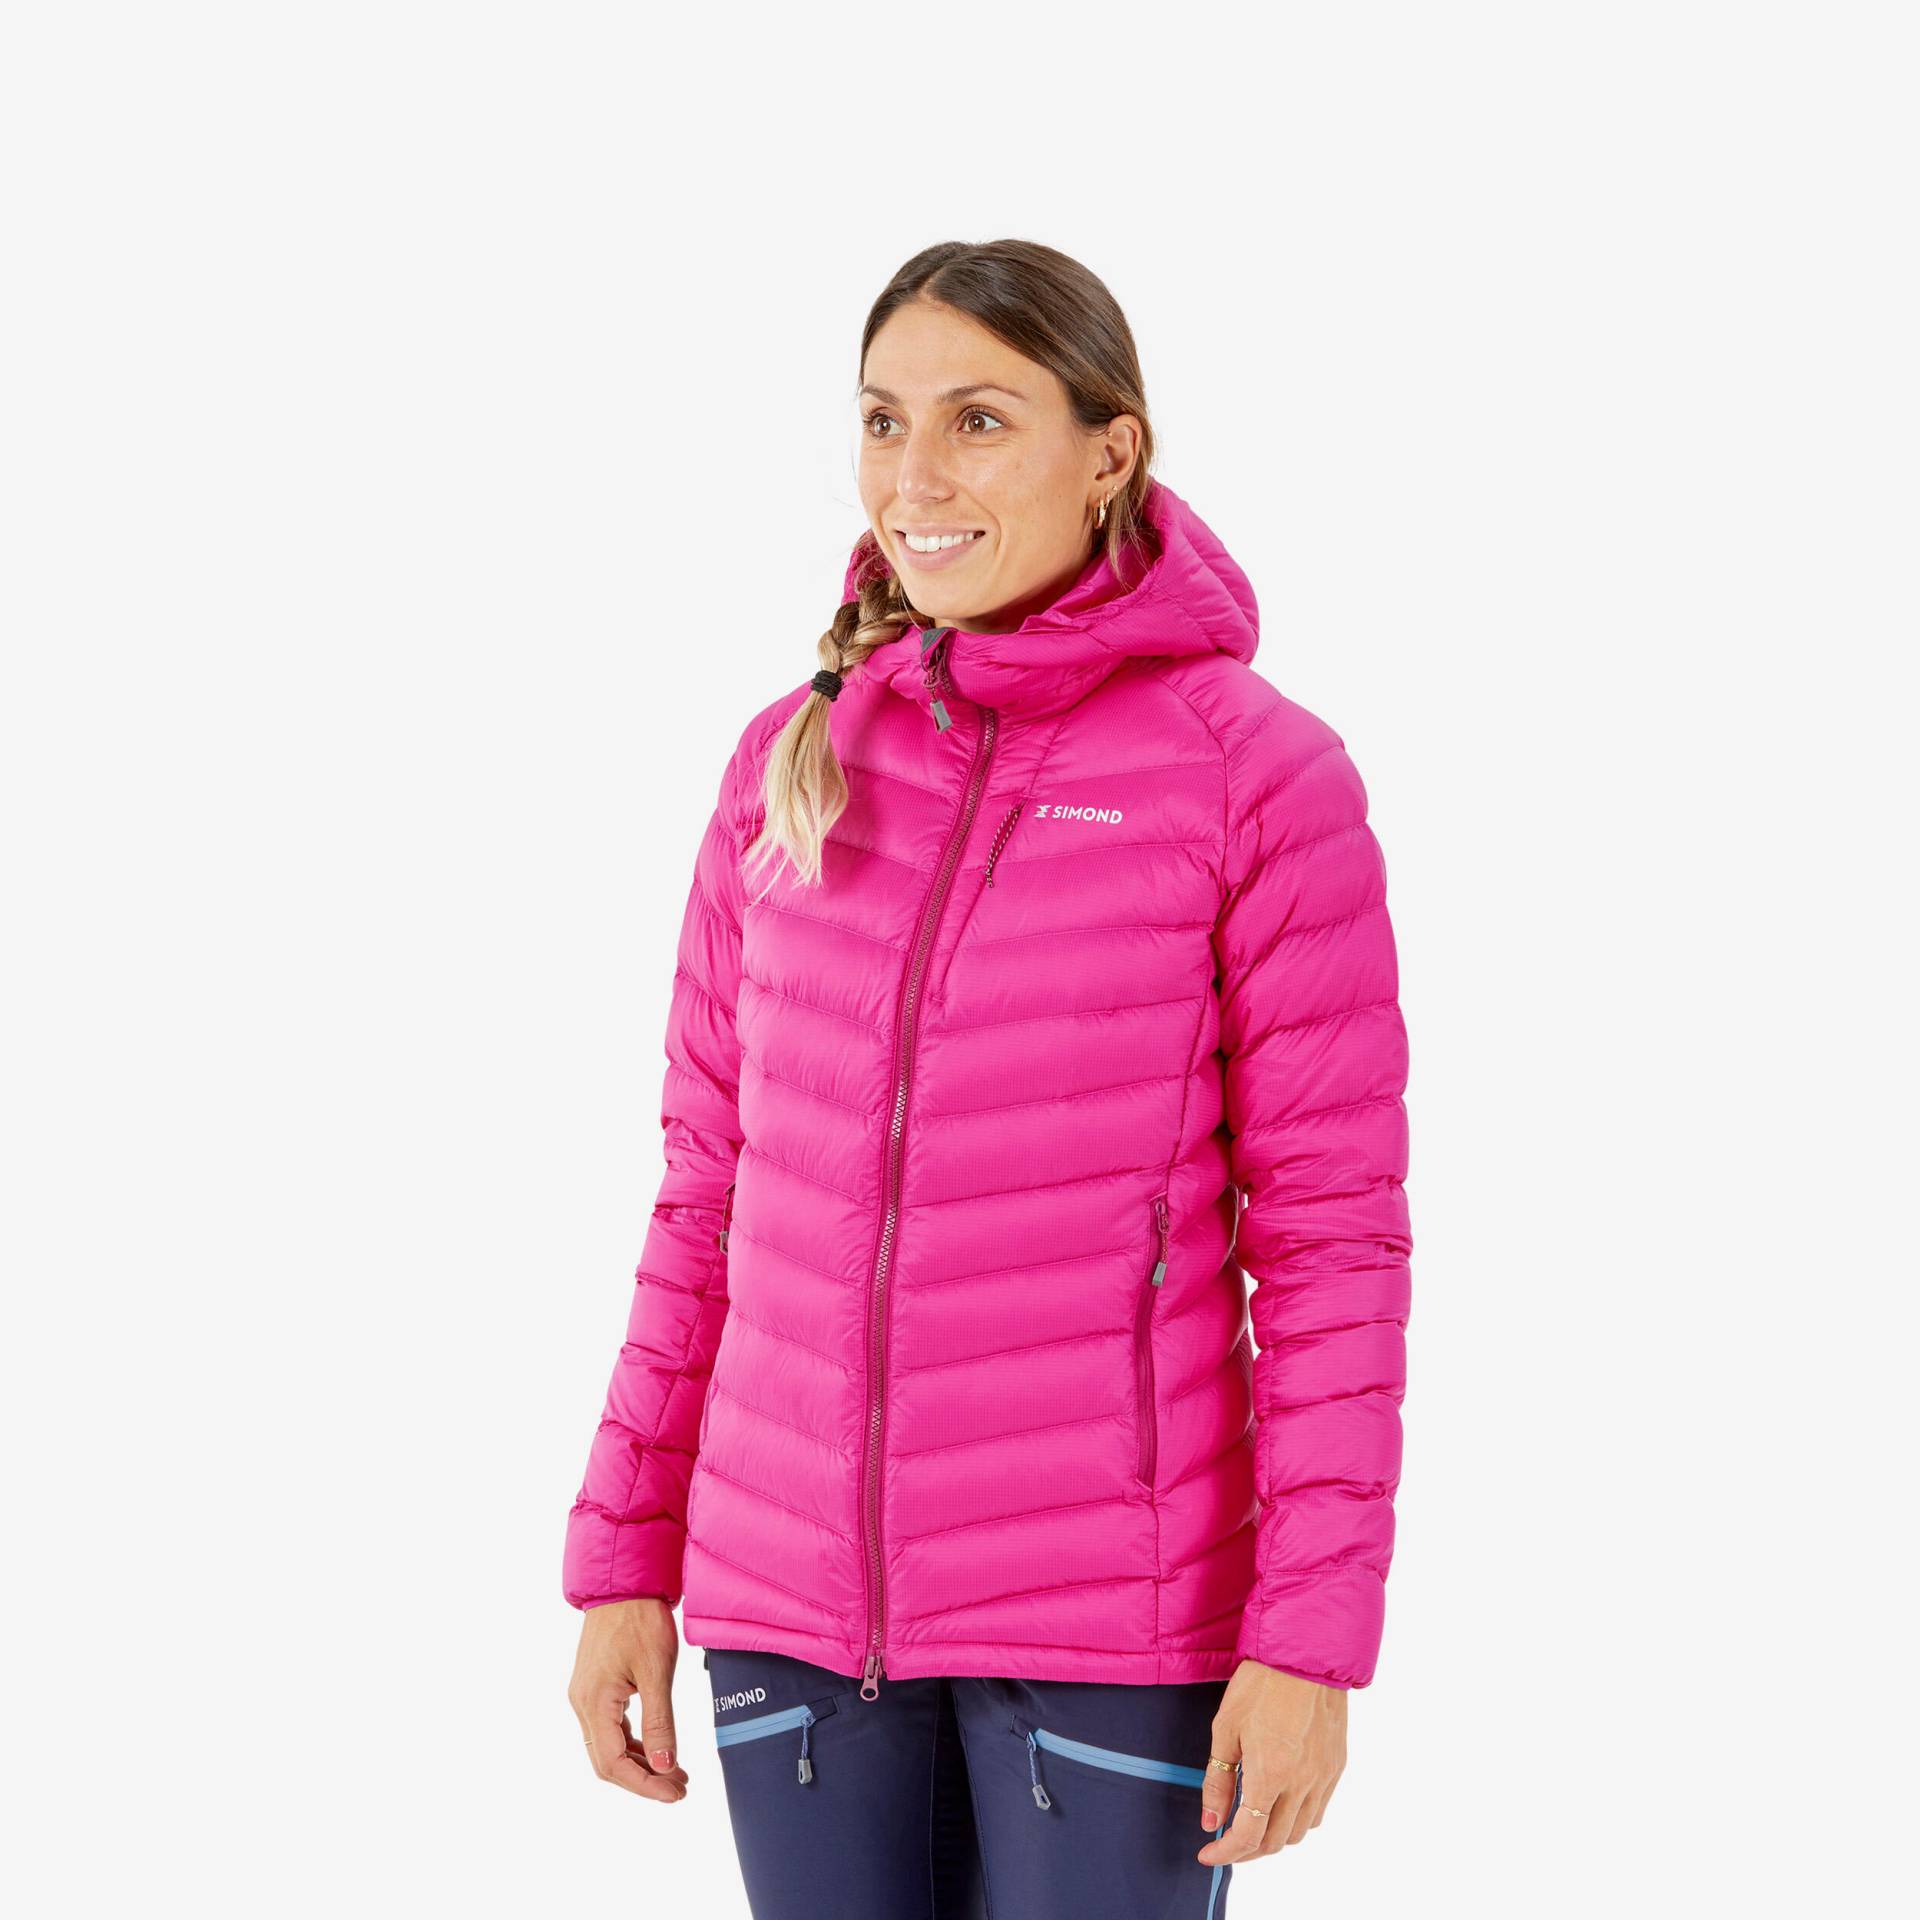 Daunenjacke Damen ‒ Alpinism Light pink von SIMOND